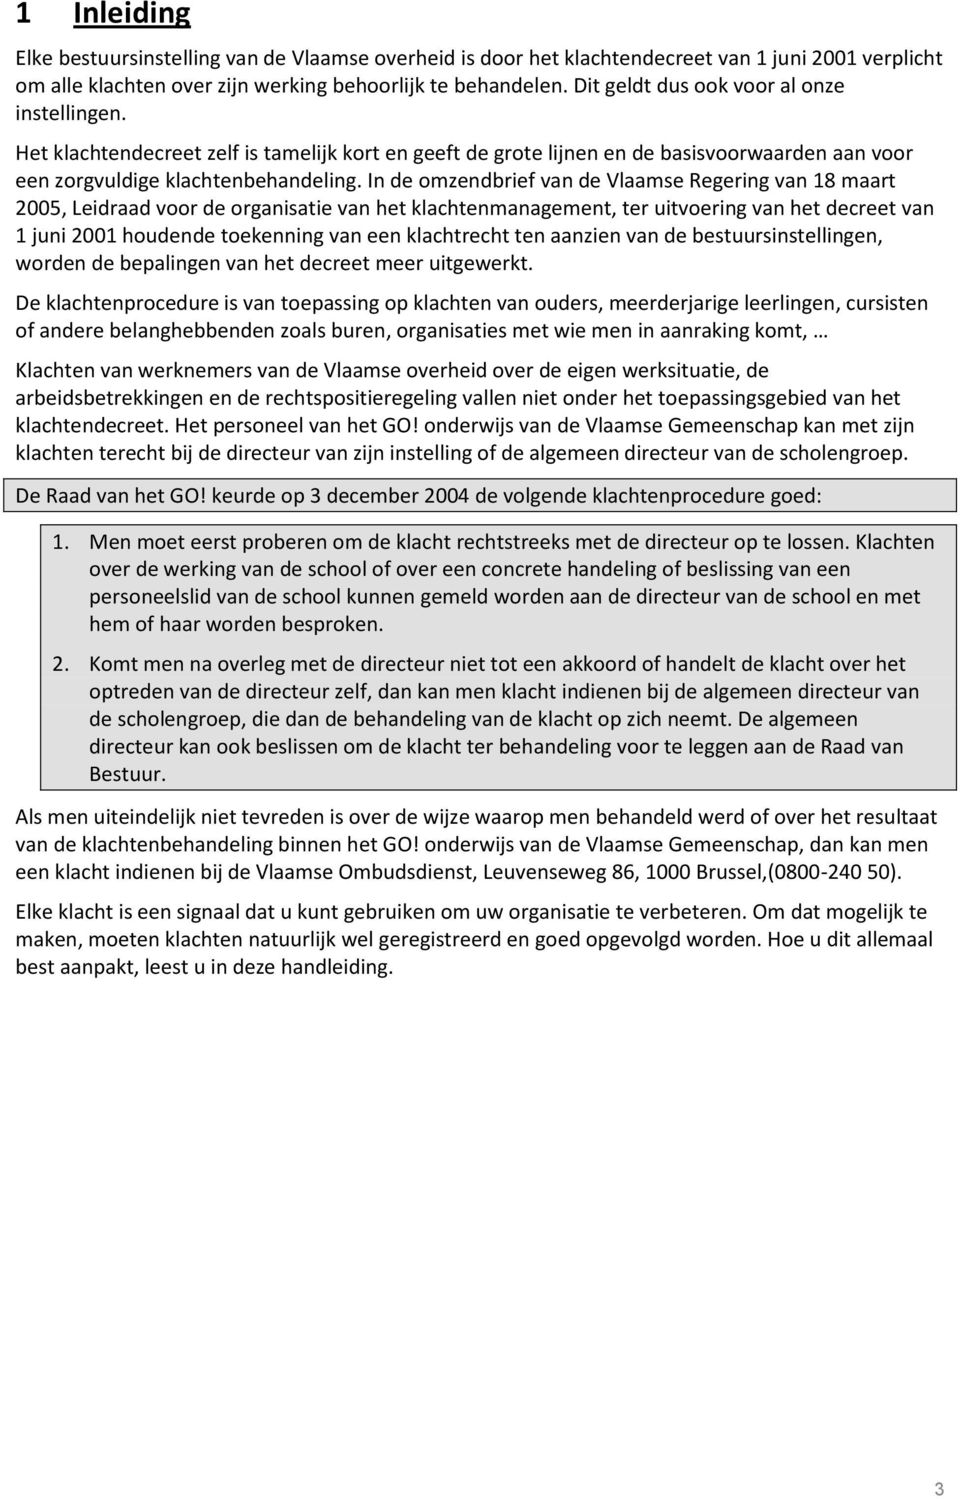 In de omzendbrief van de Vlaamse Regering van 18 maart 2005, Leidraad voor de organisatie van het klachtenmanagement, ter uitvoering van het decreet van 1 juni 2001 houdende toekenning van een